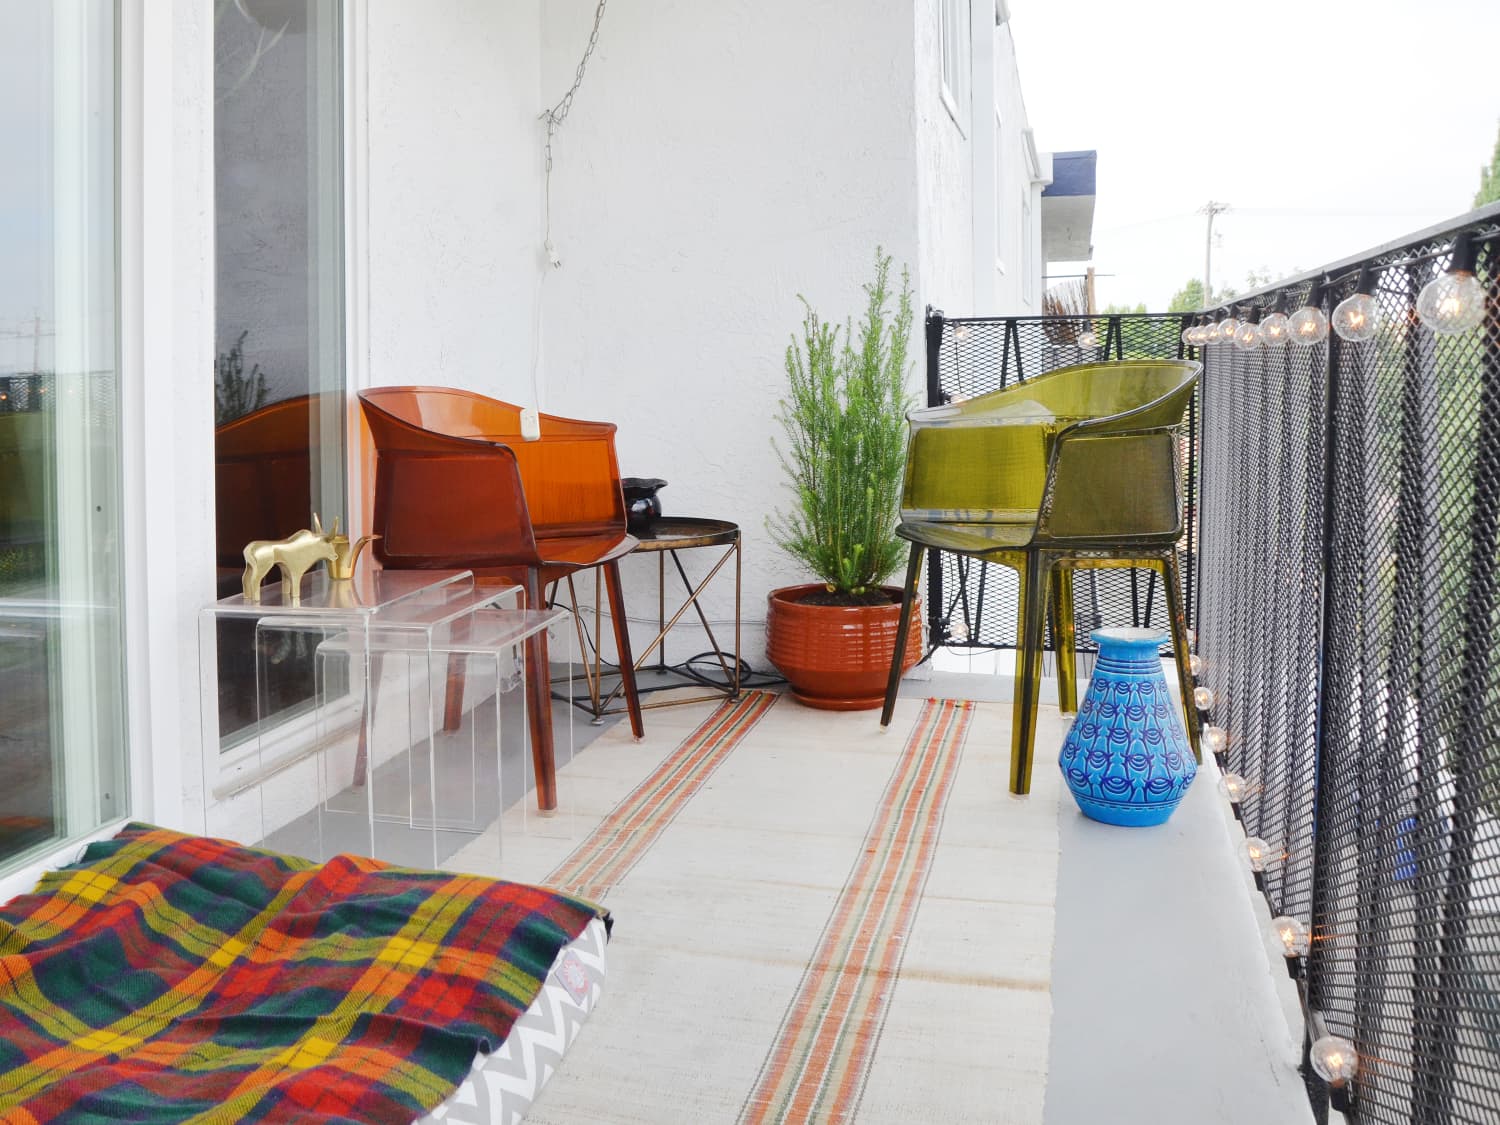 Balcony Rug Ideas: Pick an Outdoor Rug for Your Veranda